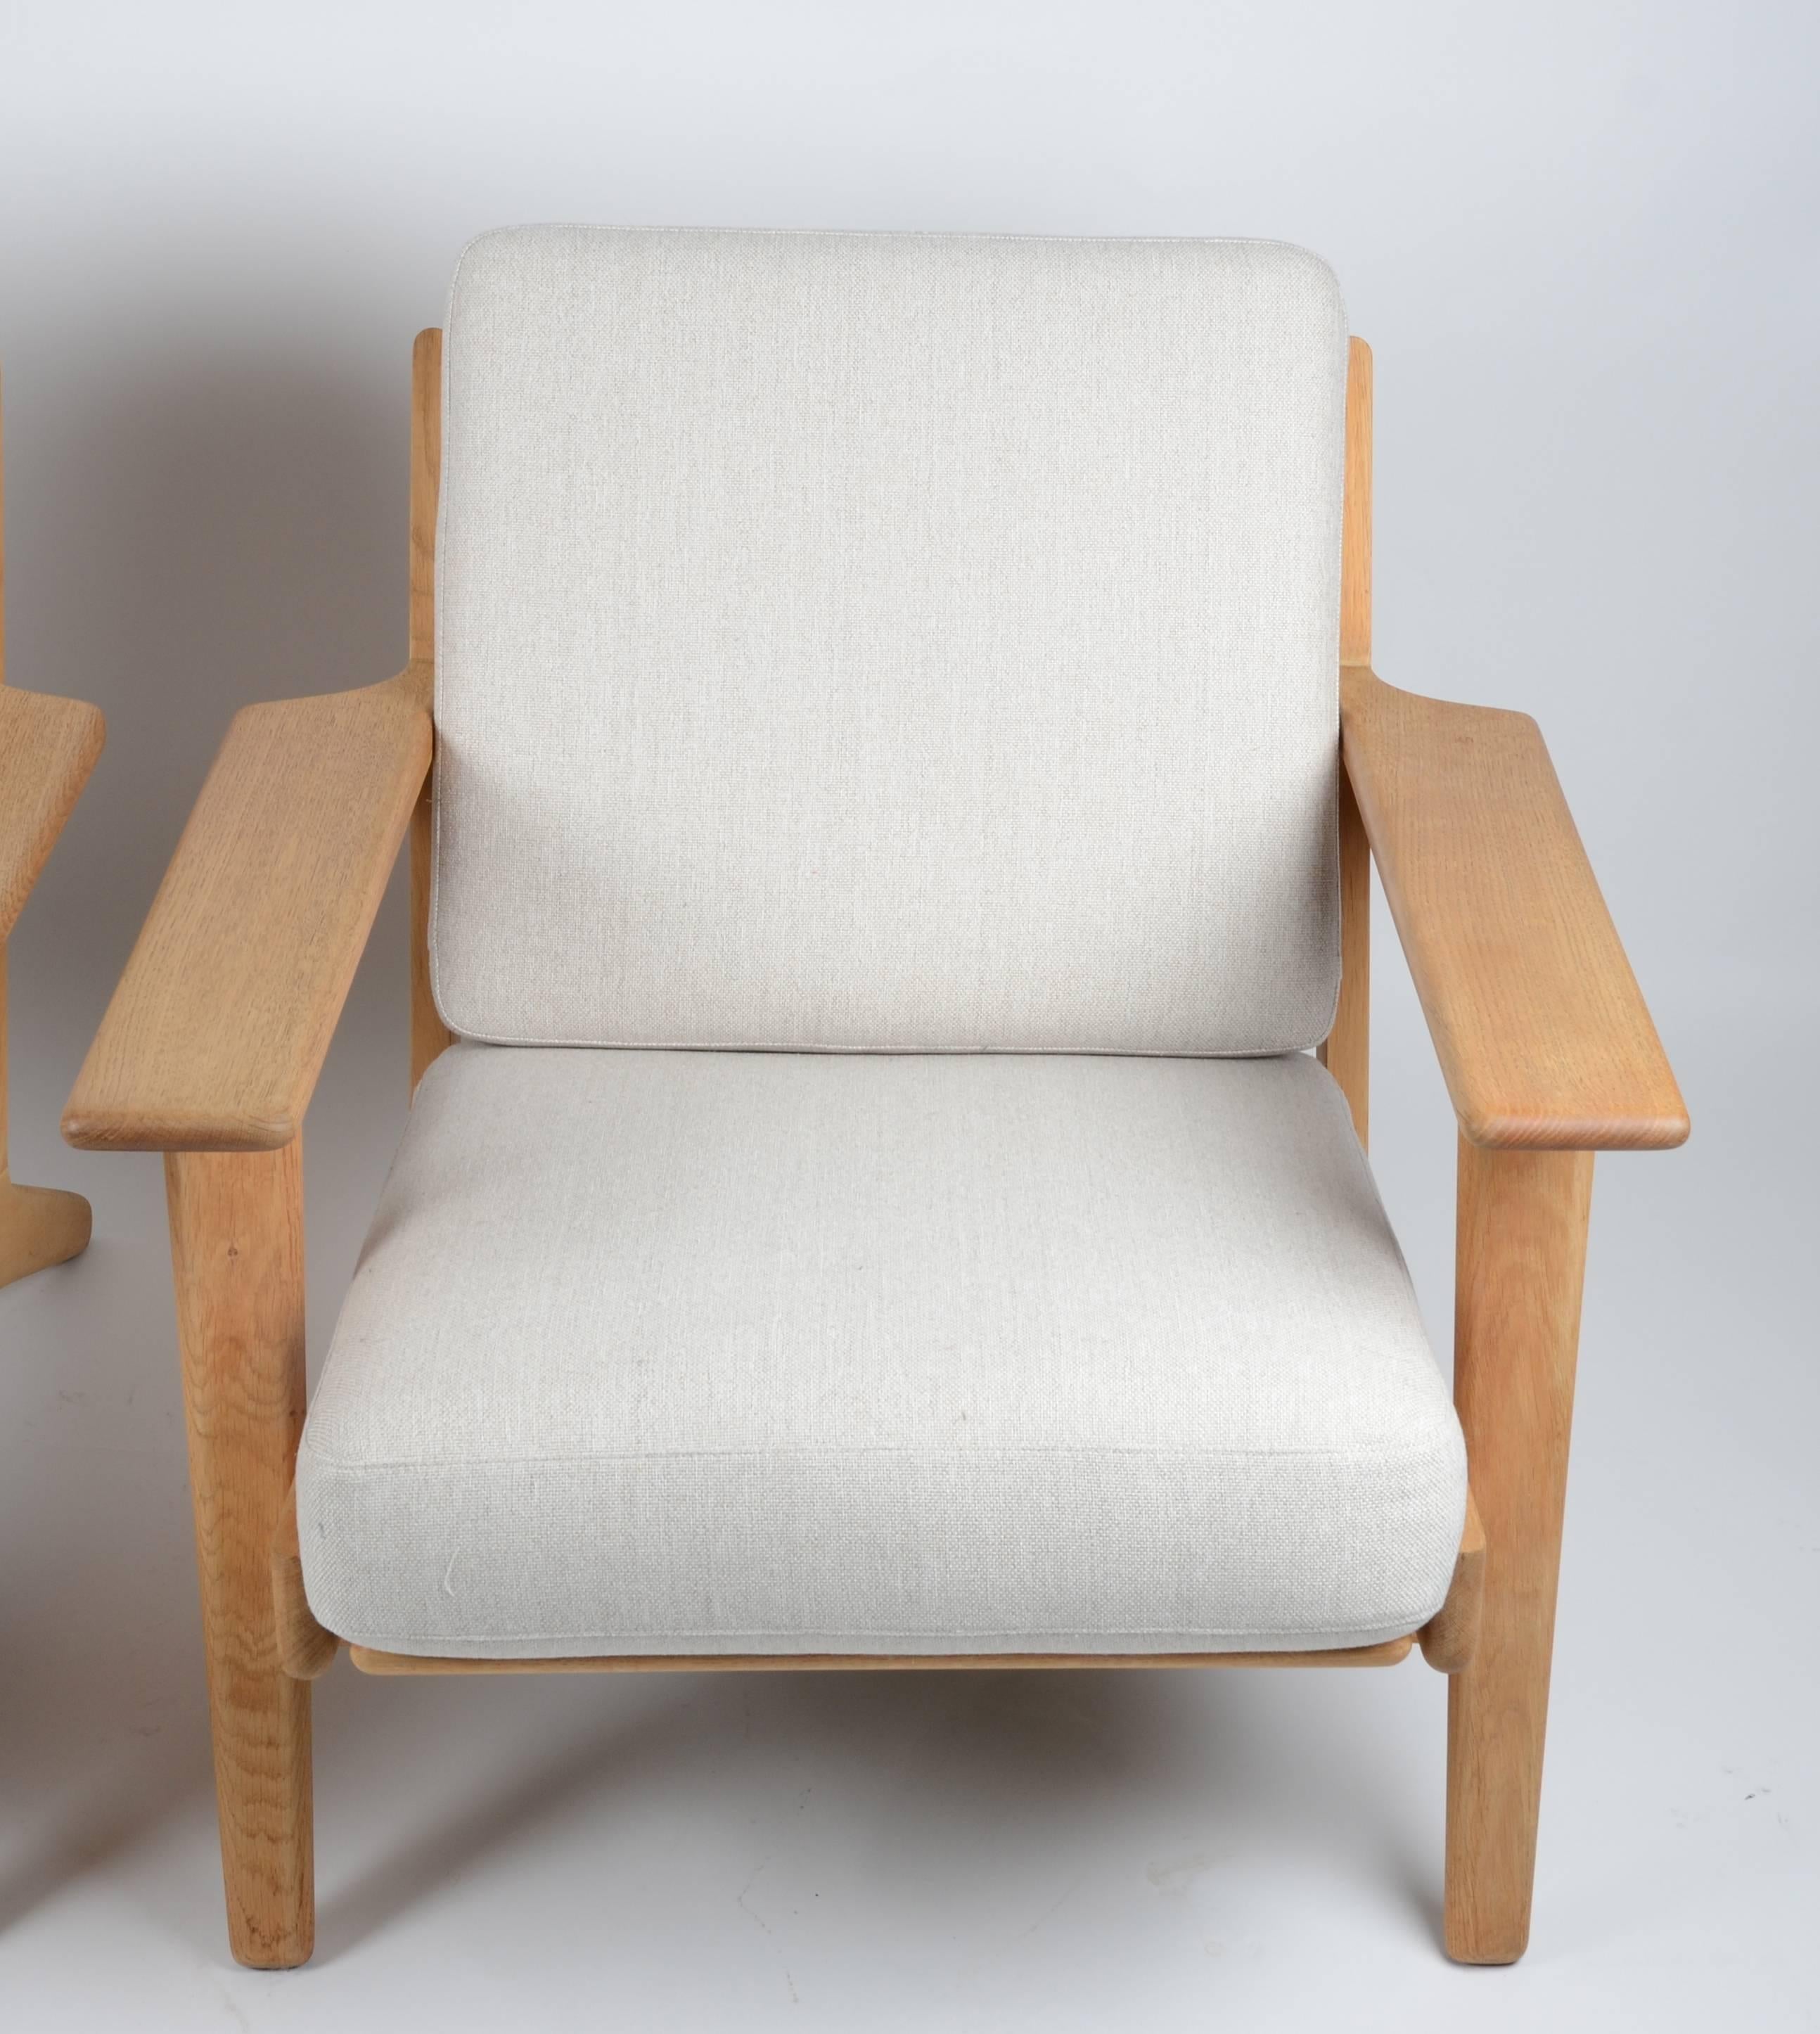 Danish Lounge Chair, GE290 by Hans J. Wegner for GETAMA, Denmark, 1950s-1960s